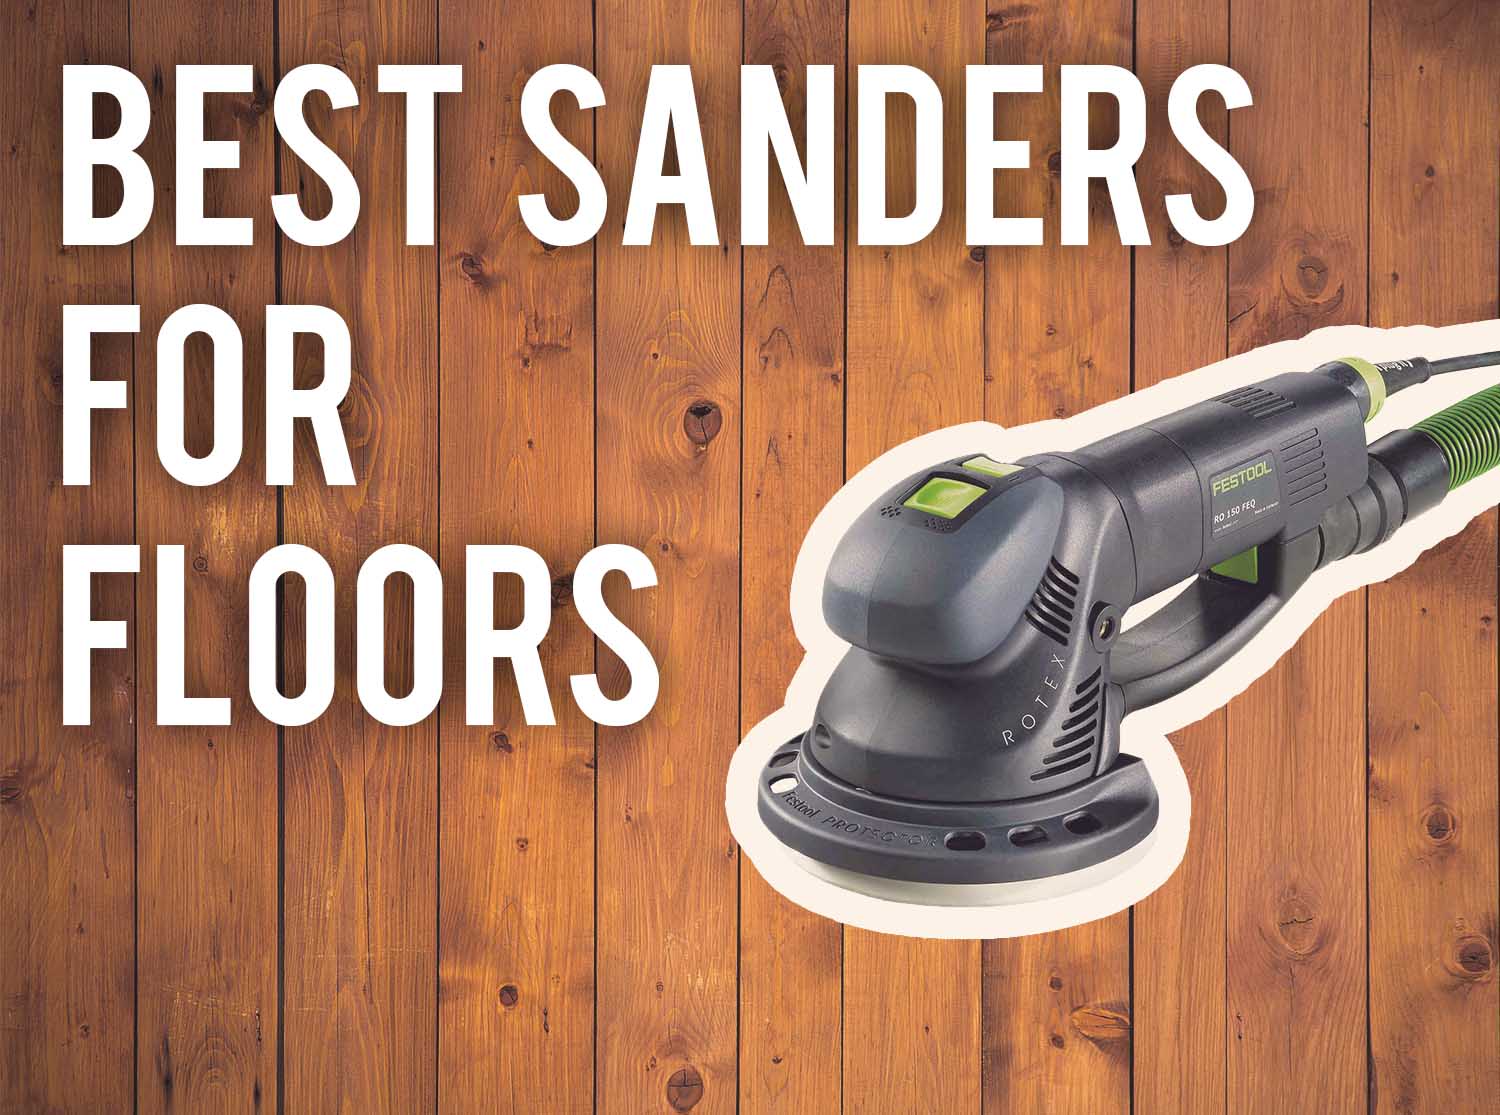 5 Best Hardwood Floor sanders for 2021